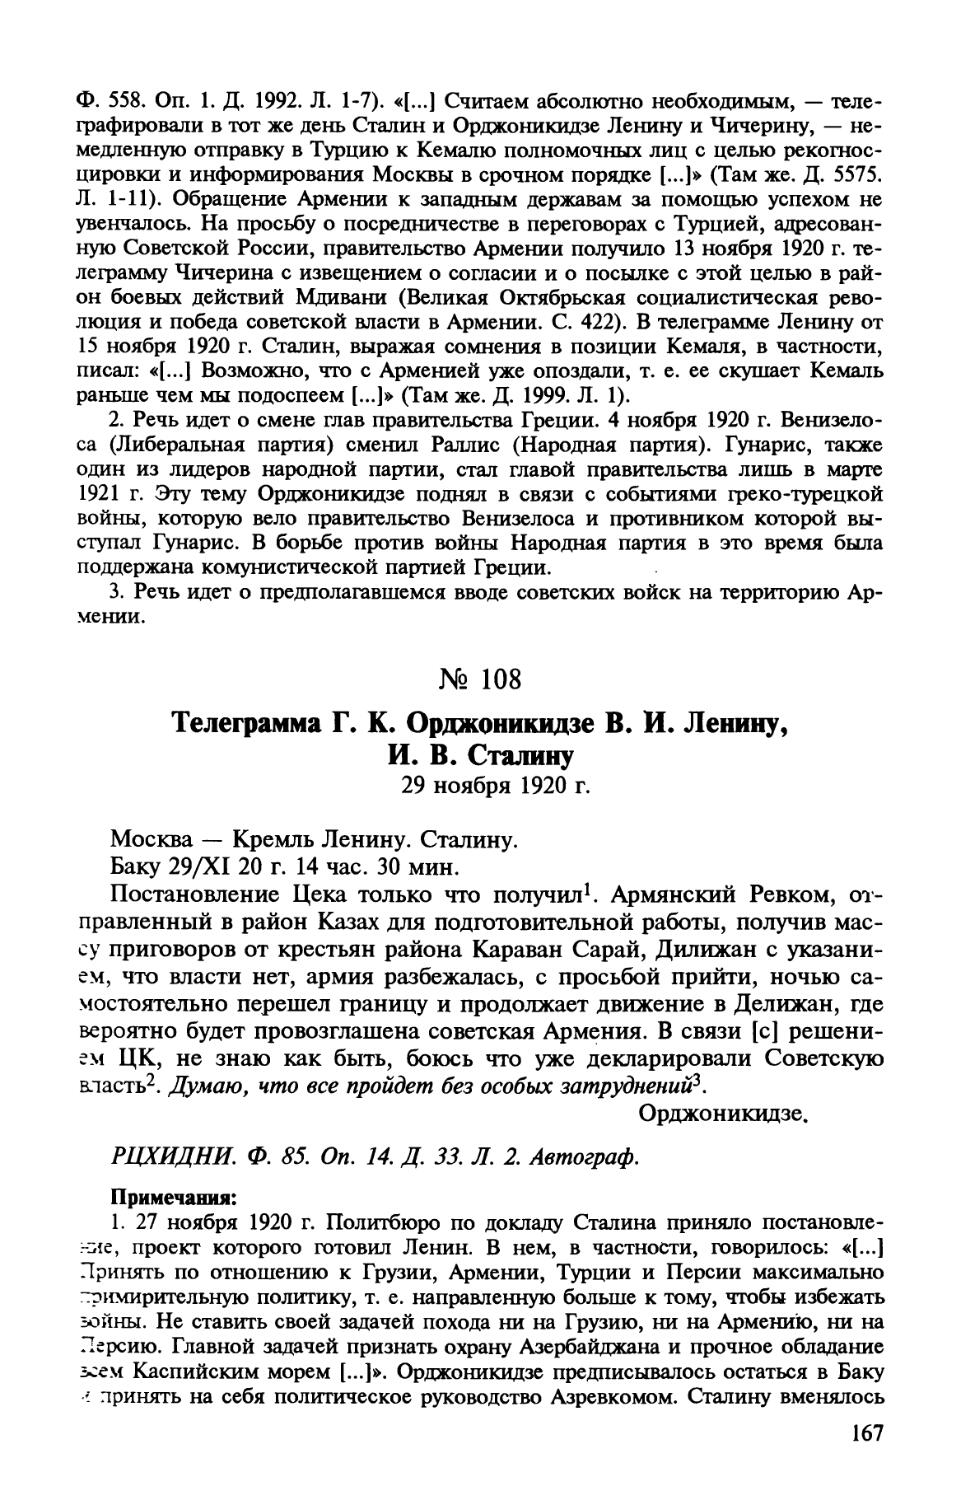 108. Телеграмма Г. К. Орджоникидзе В. И. Ленину, И. В. Сталину. 29 ноября 1920 г.